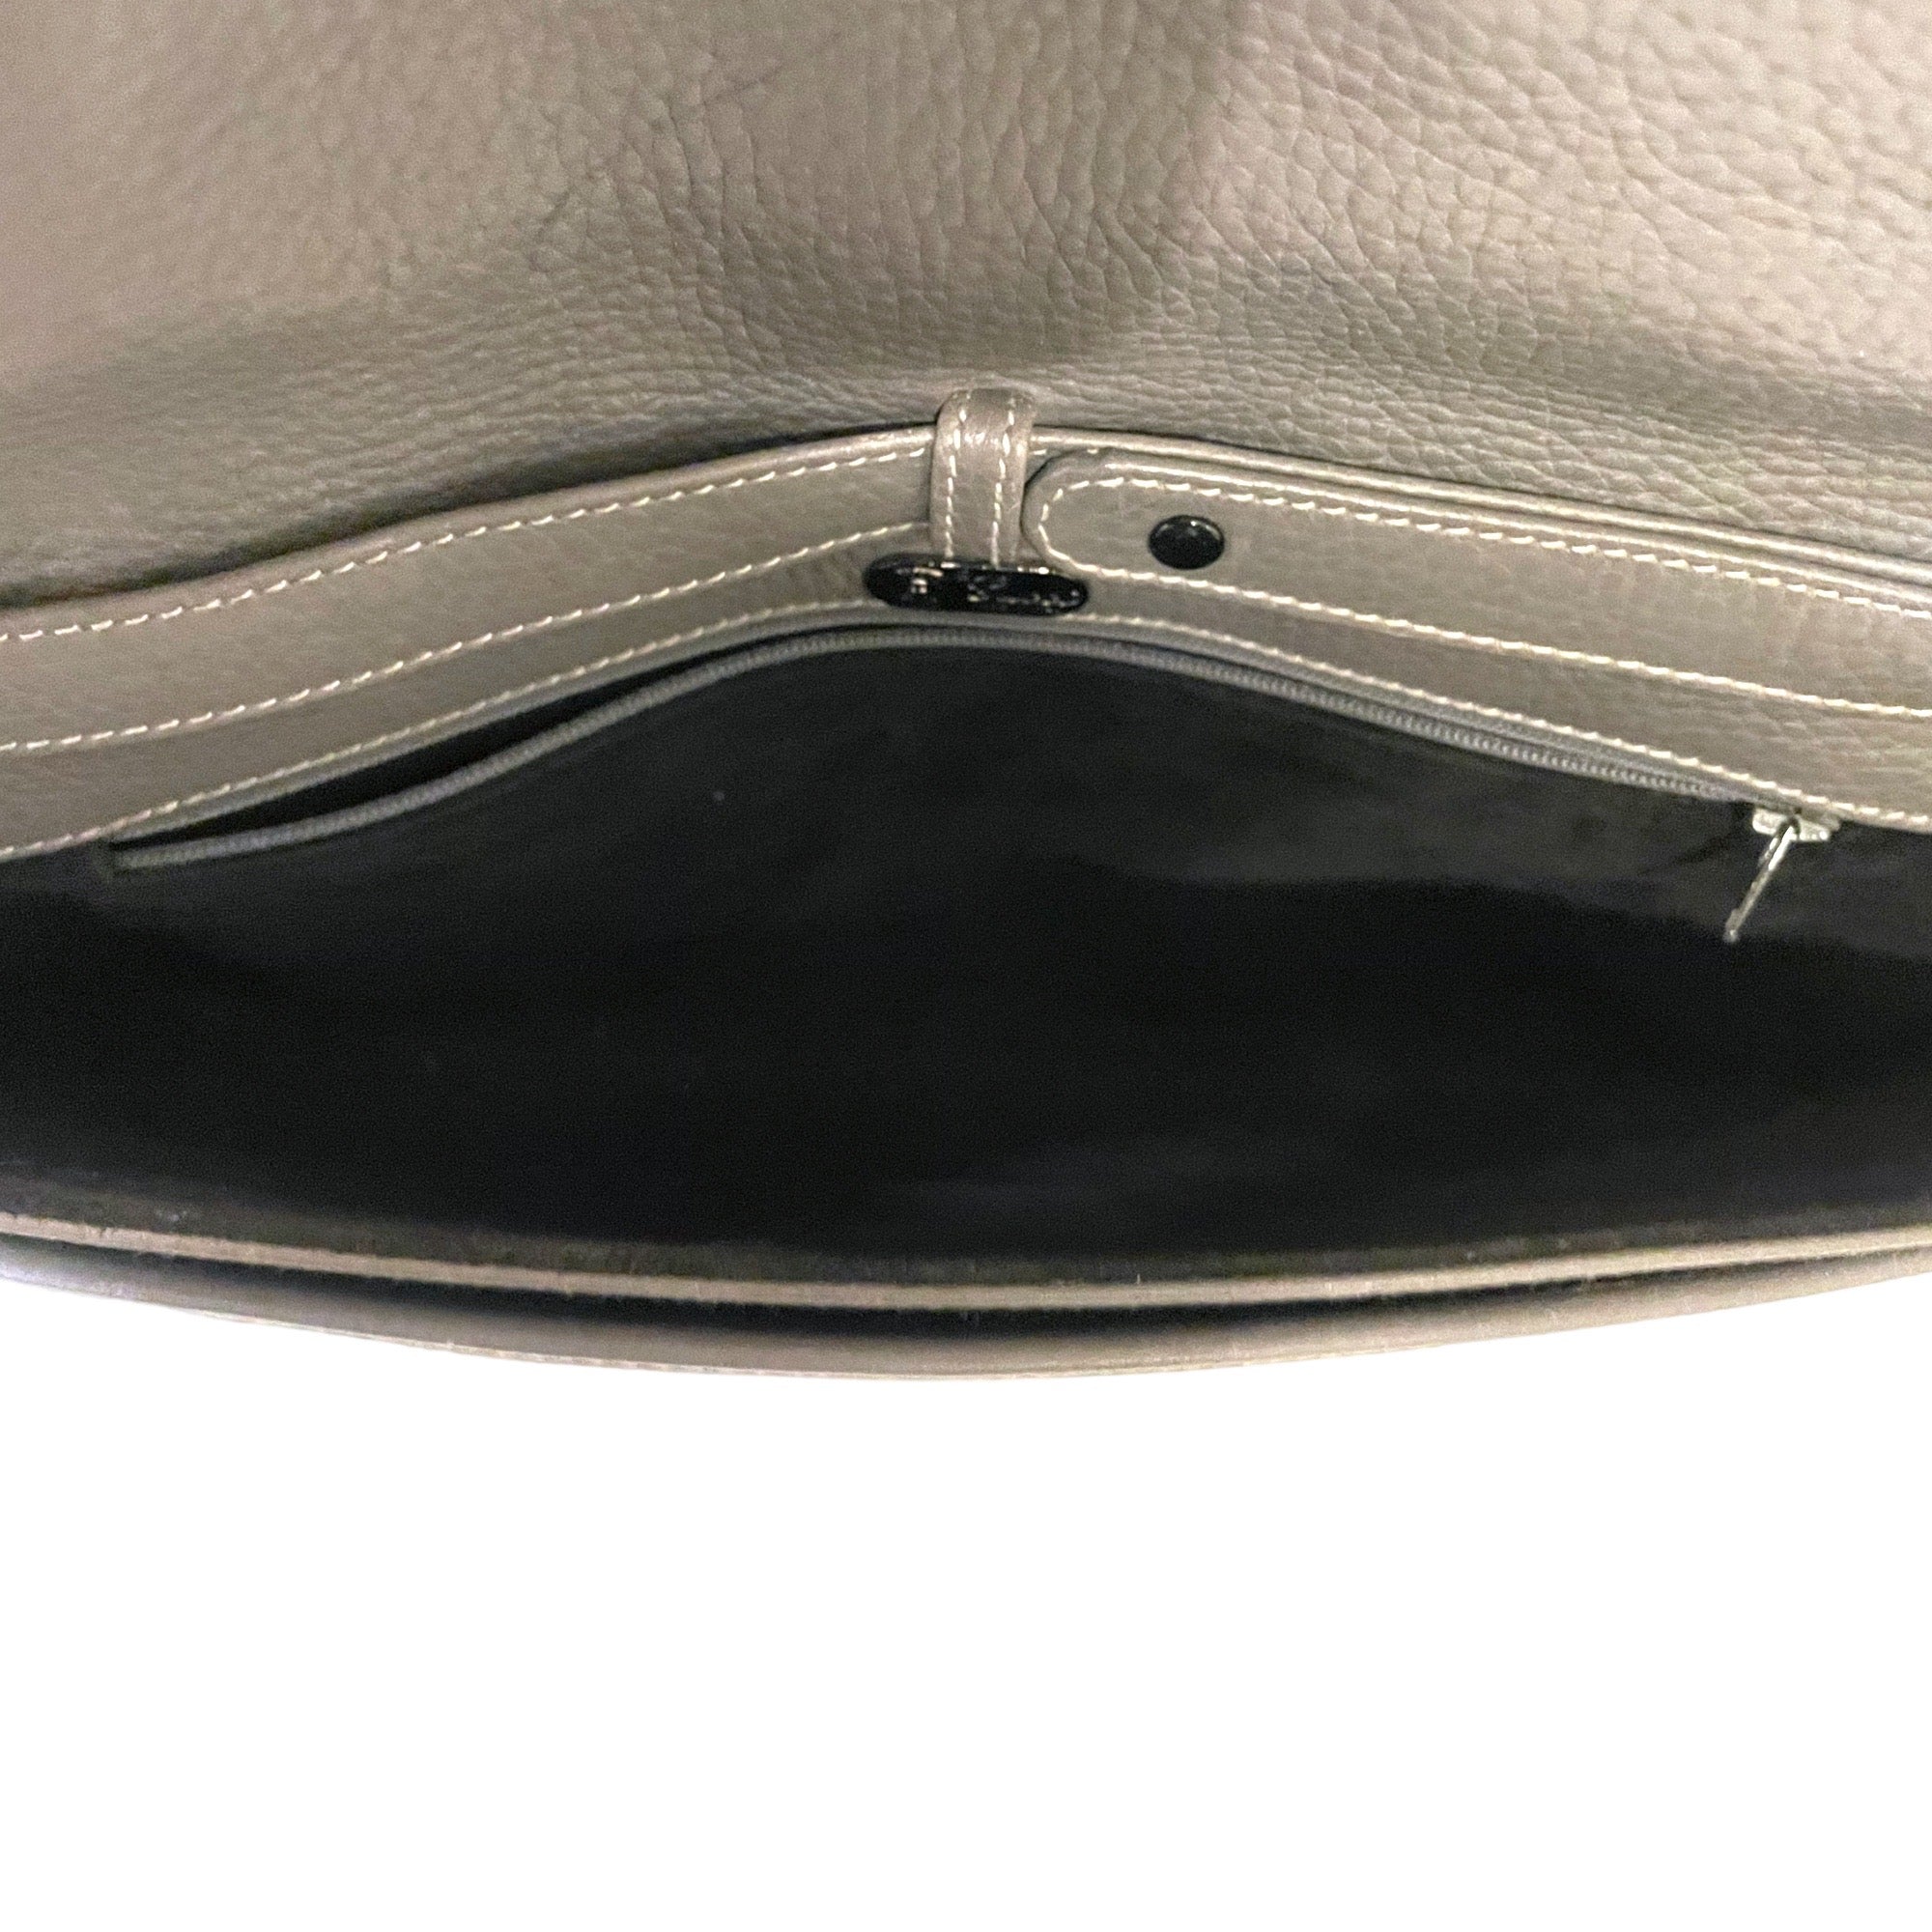 GUCCI Vintage Grey Leather Crossbody Bag / Clutch